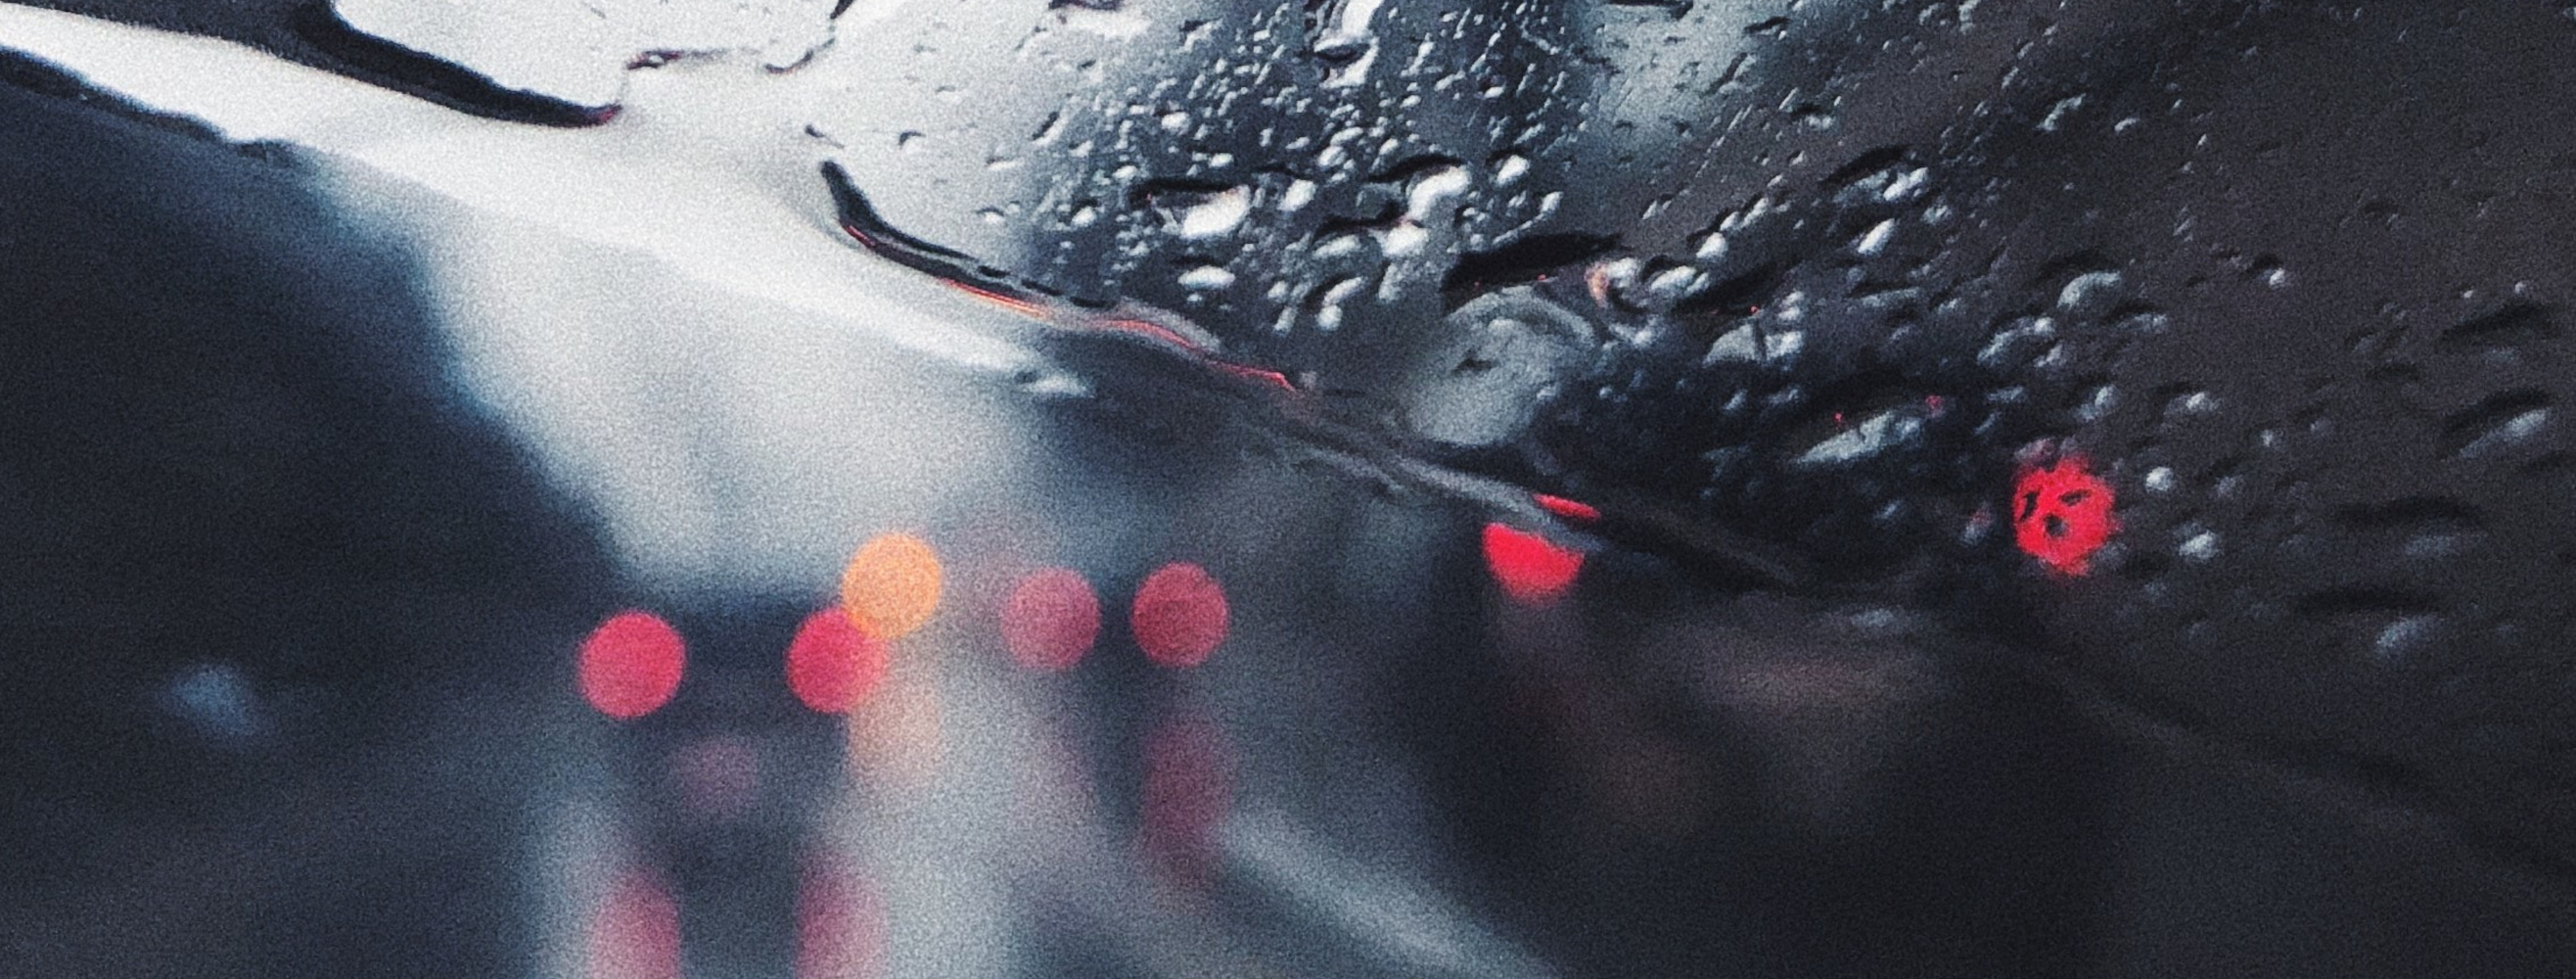 Widok przez szybę samochodową podczas intensywnych opadów deszczu. 